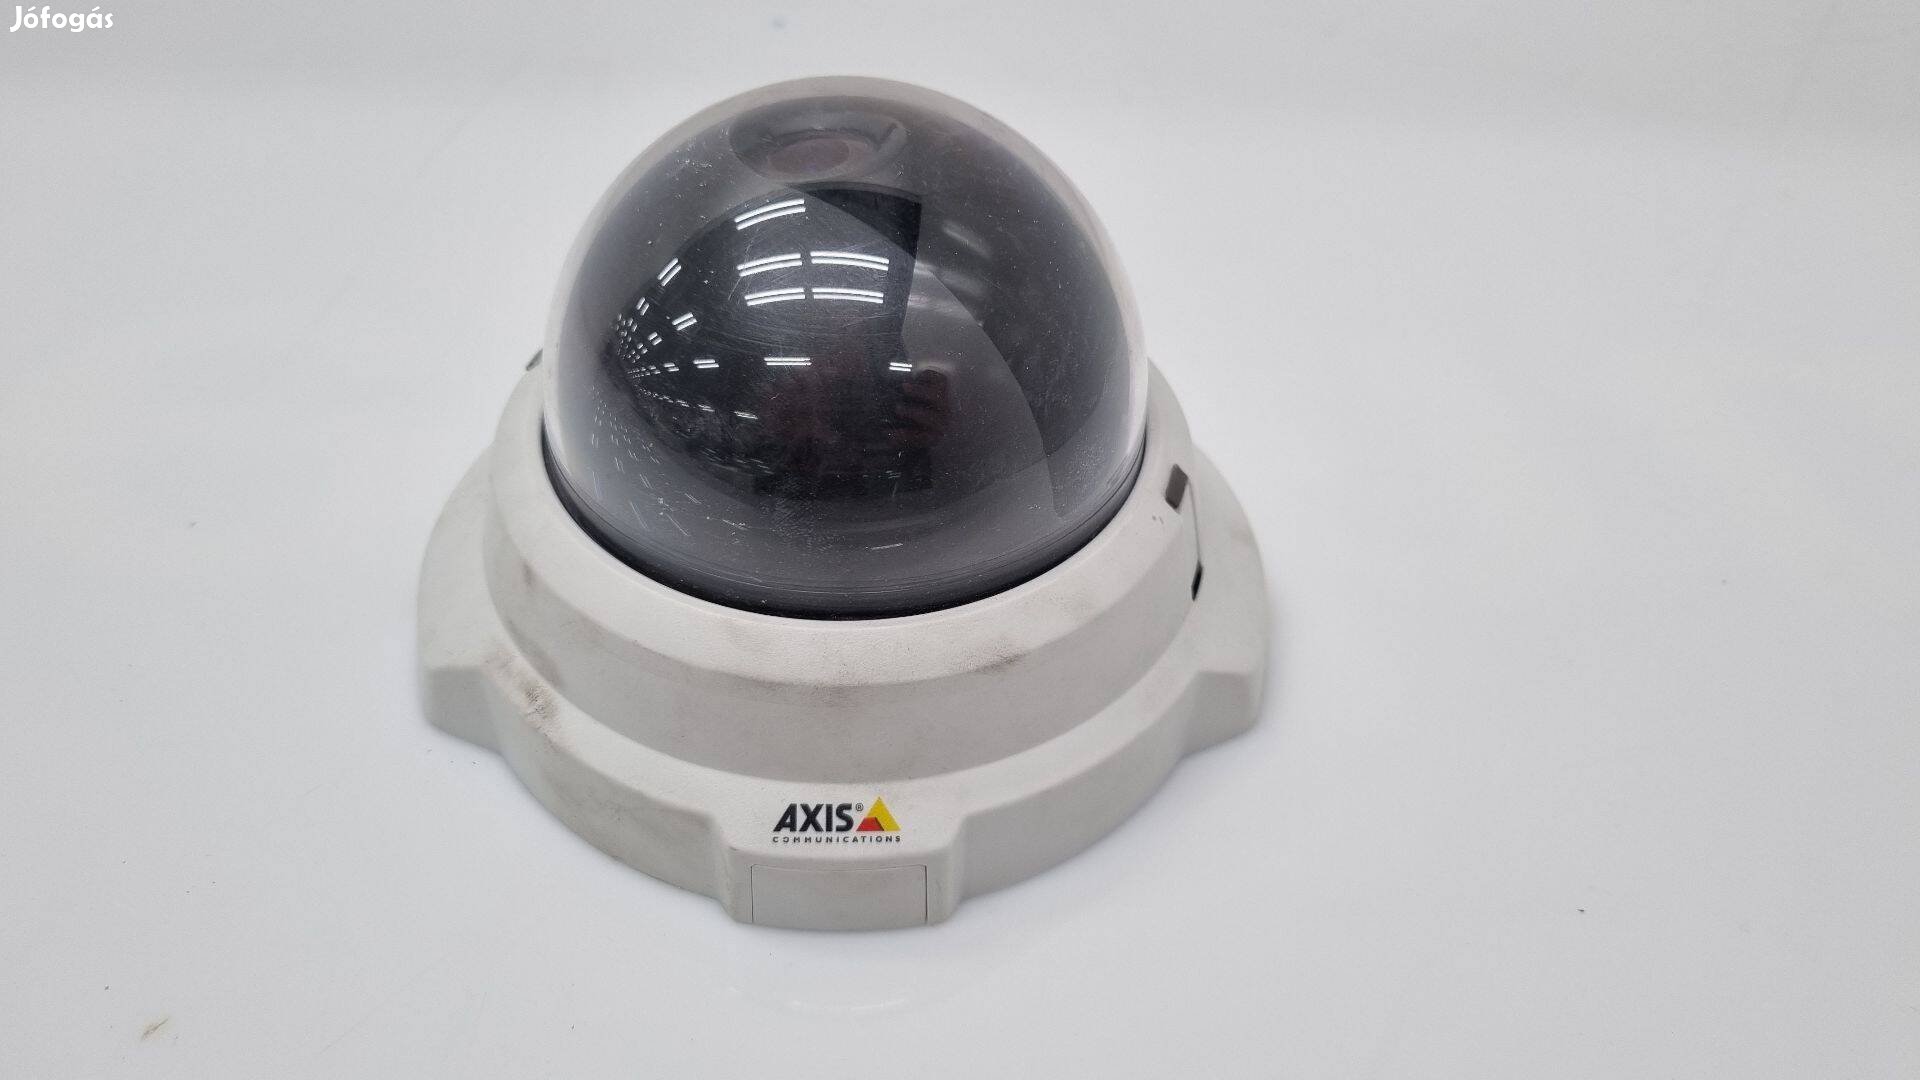 Axis dóm ipari kamera jelképes áron elvihető! (M3204)